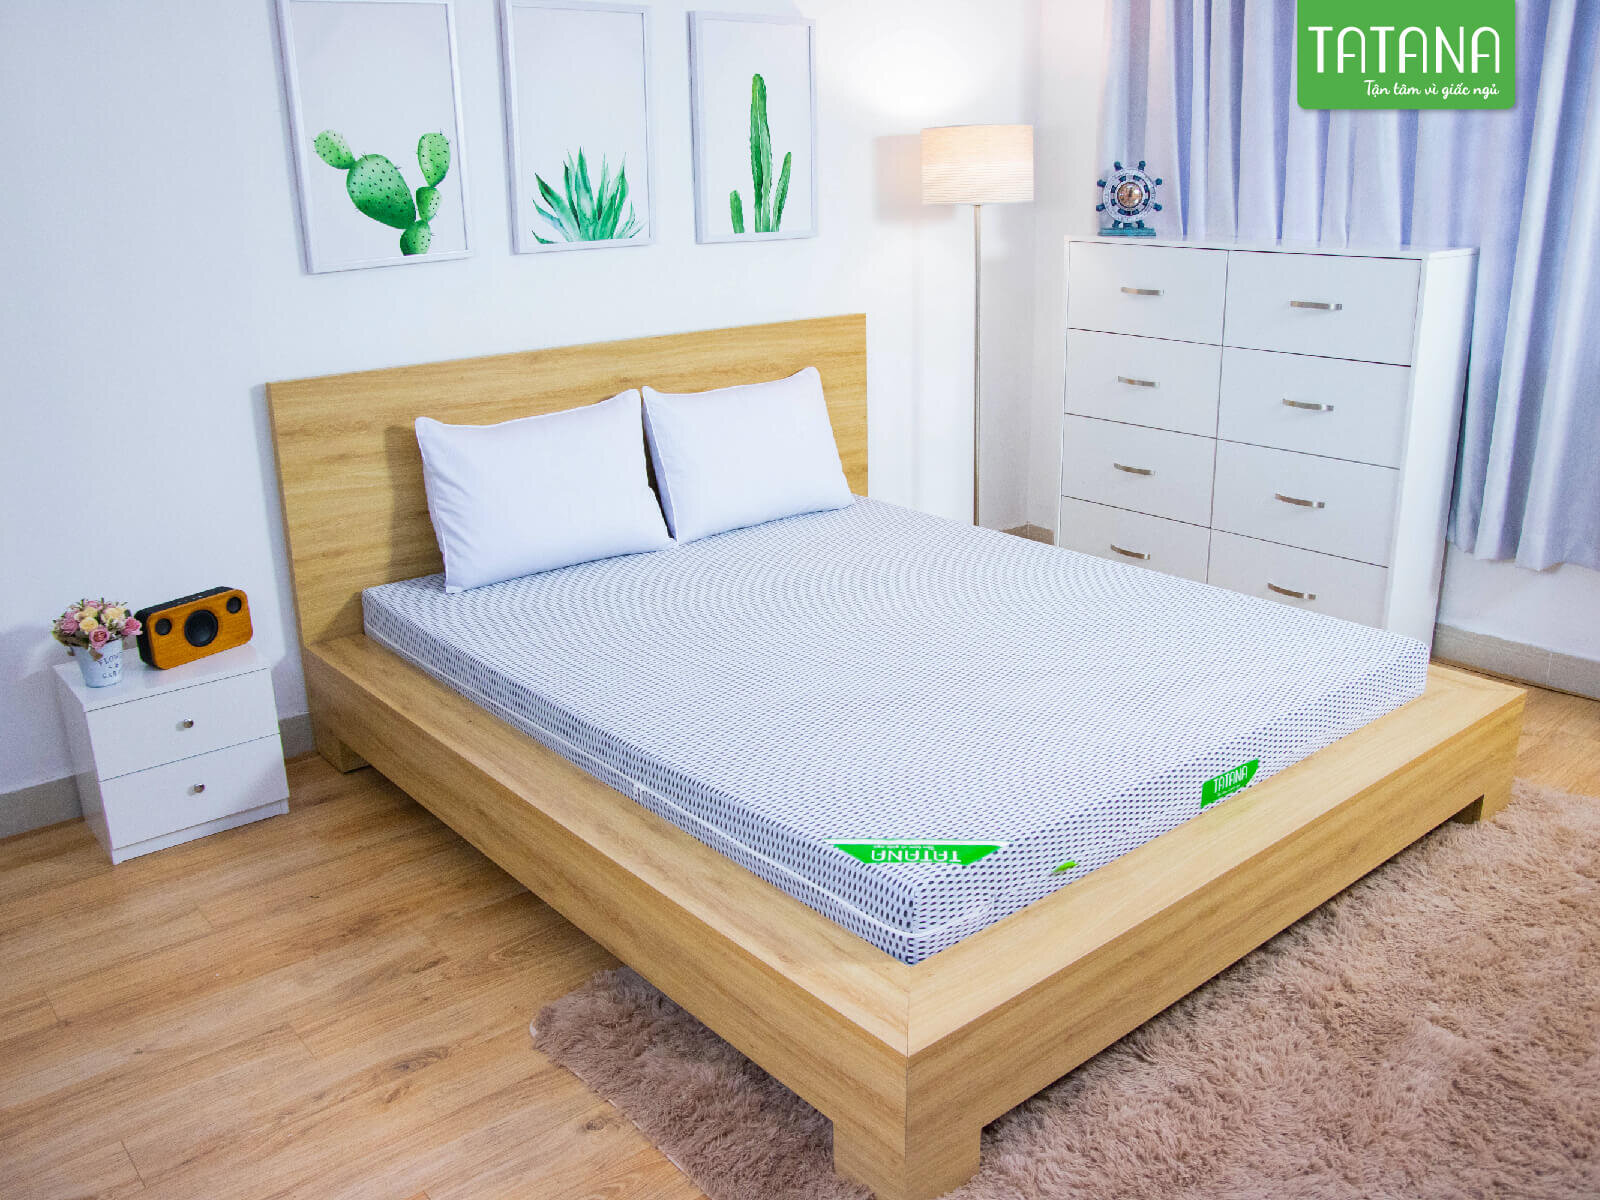 Nệm Tatana mang lại không gian ấm áp cho phòng ngủ của bạn 